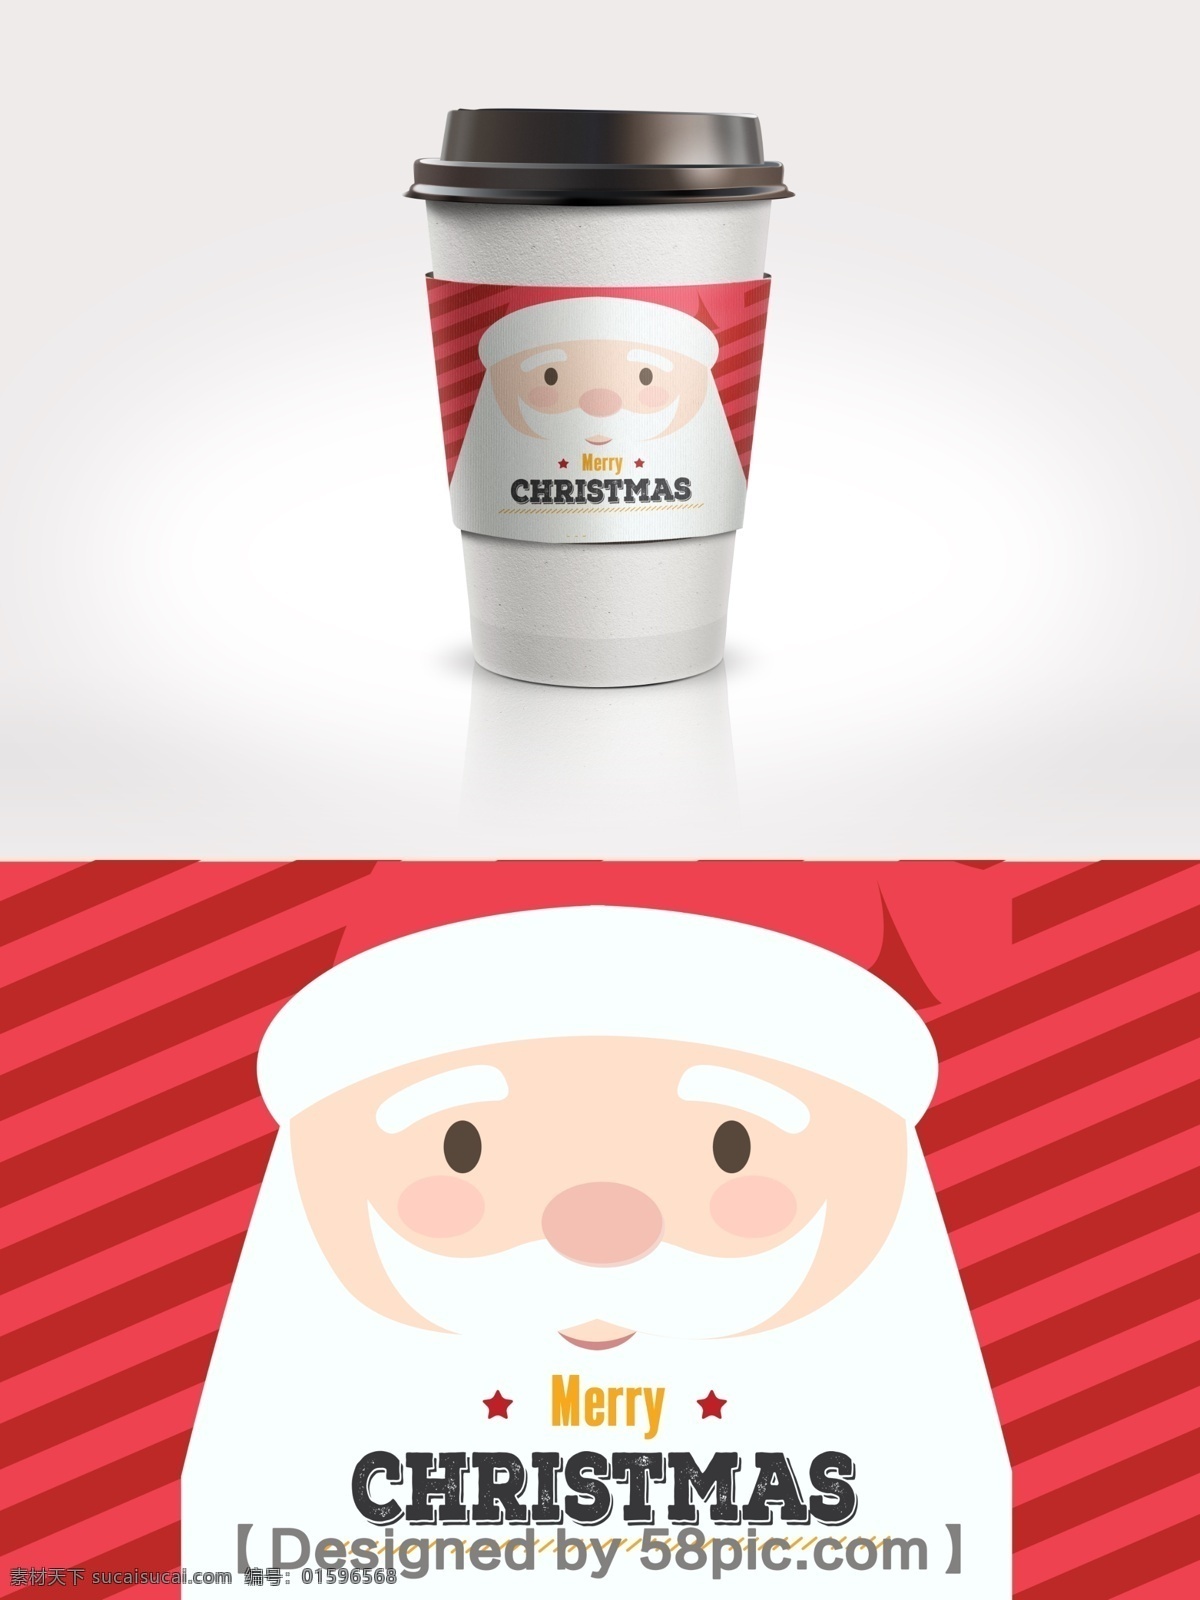 红色 简约 大气 圣诞老人 节日 包装 咖啡 套 psd素材 白红色 广告设计模版 简约大气 节日包装设计 咖啡套设计 圣诞老人素材